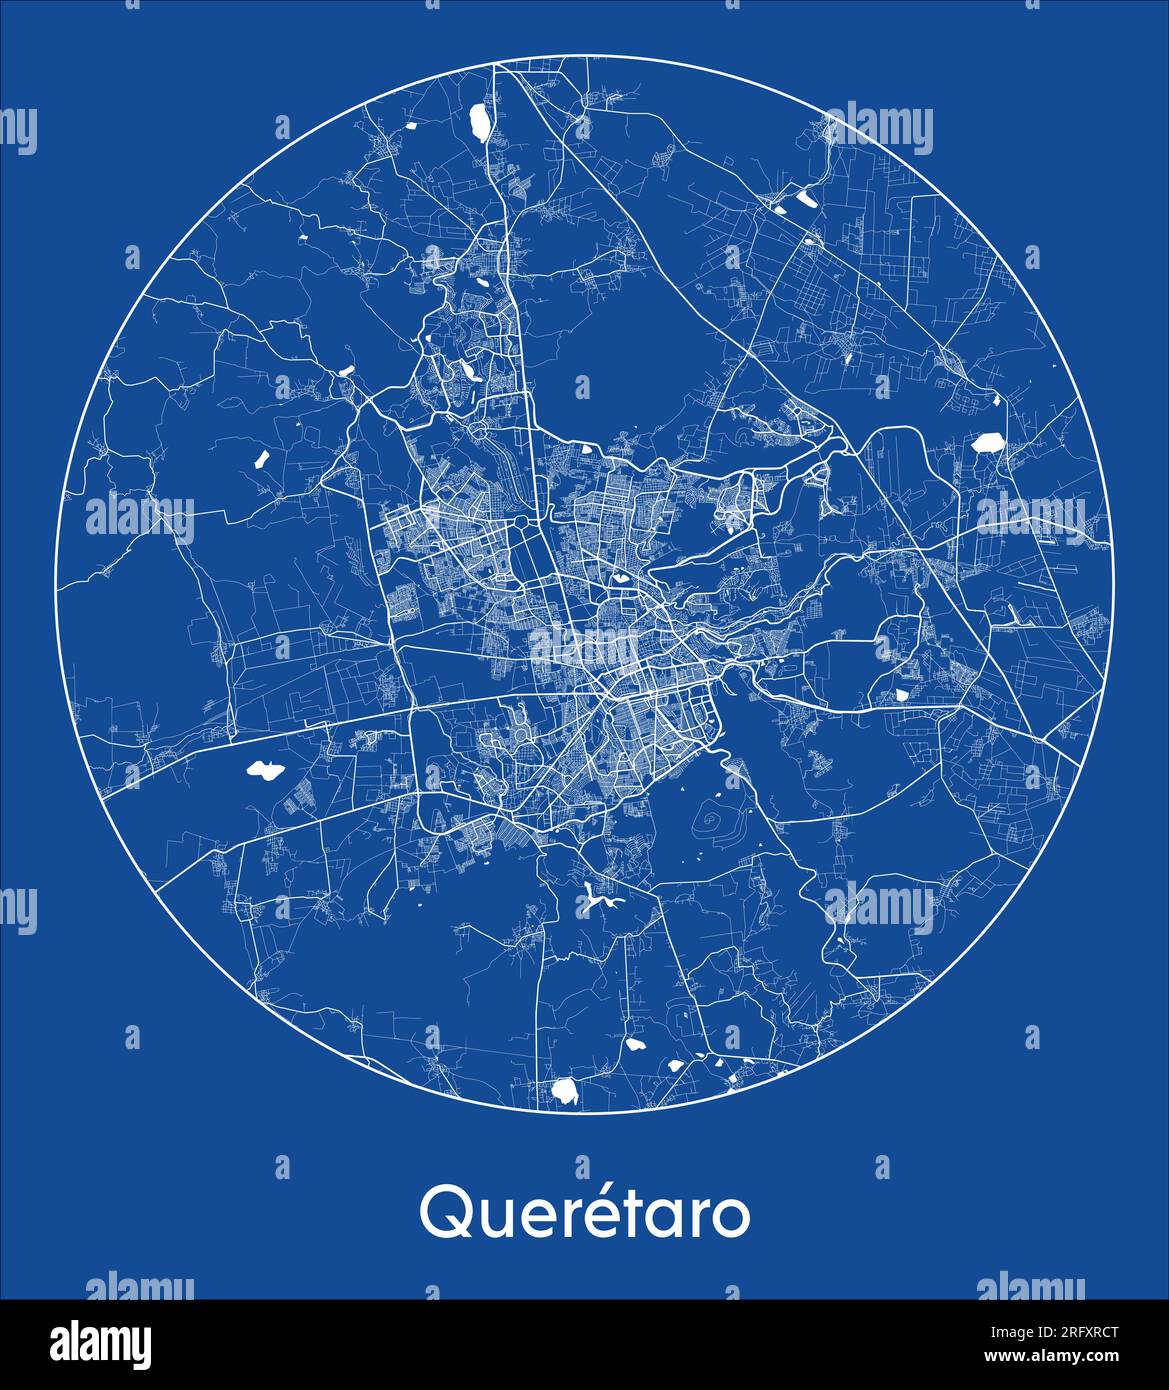 Carte de la ville Queretaro Mexique Amérique du Nord bleu impression ronde cercle illustration vectorielle Illustration de Vecteur